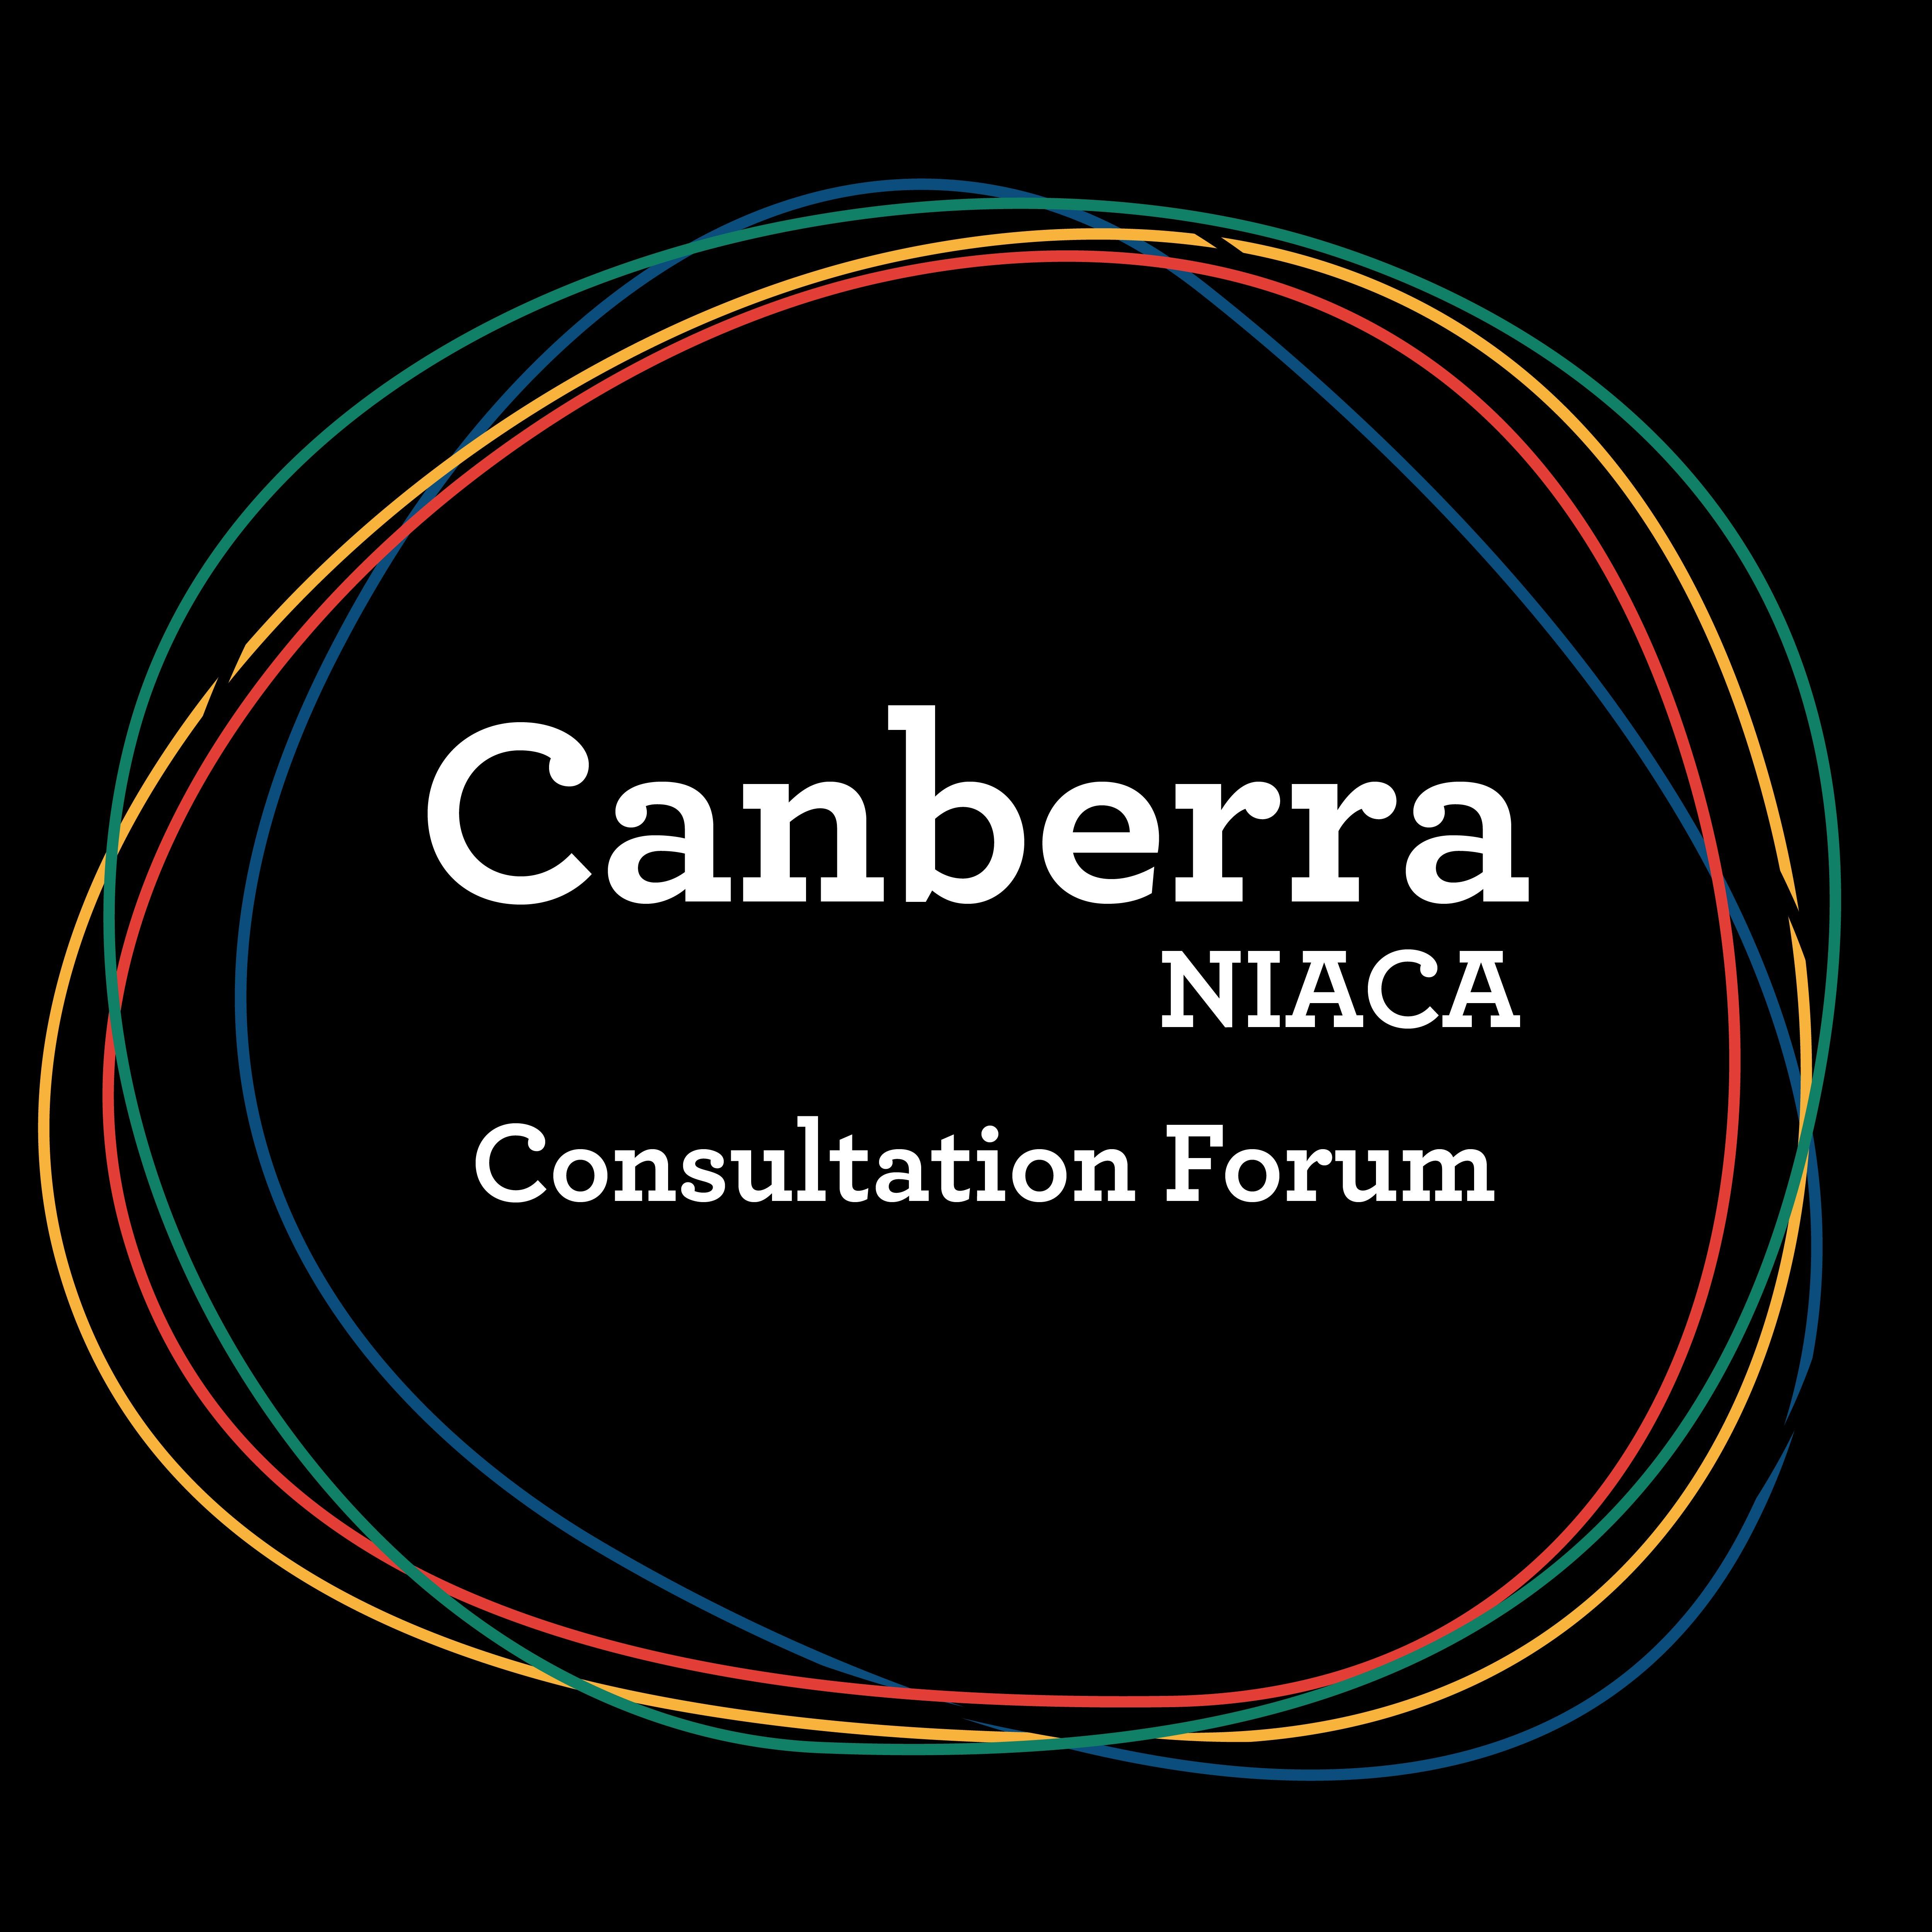 Canberra- NIACA Consultation Forum